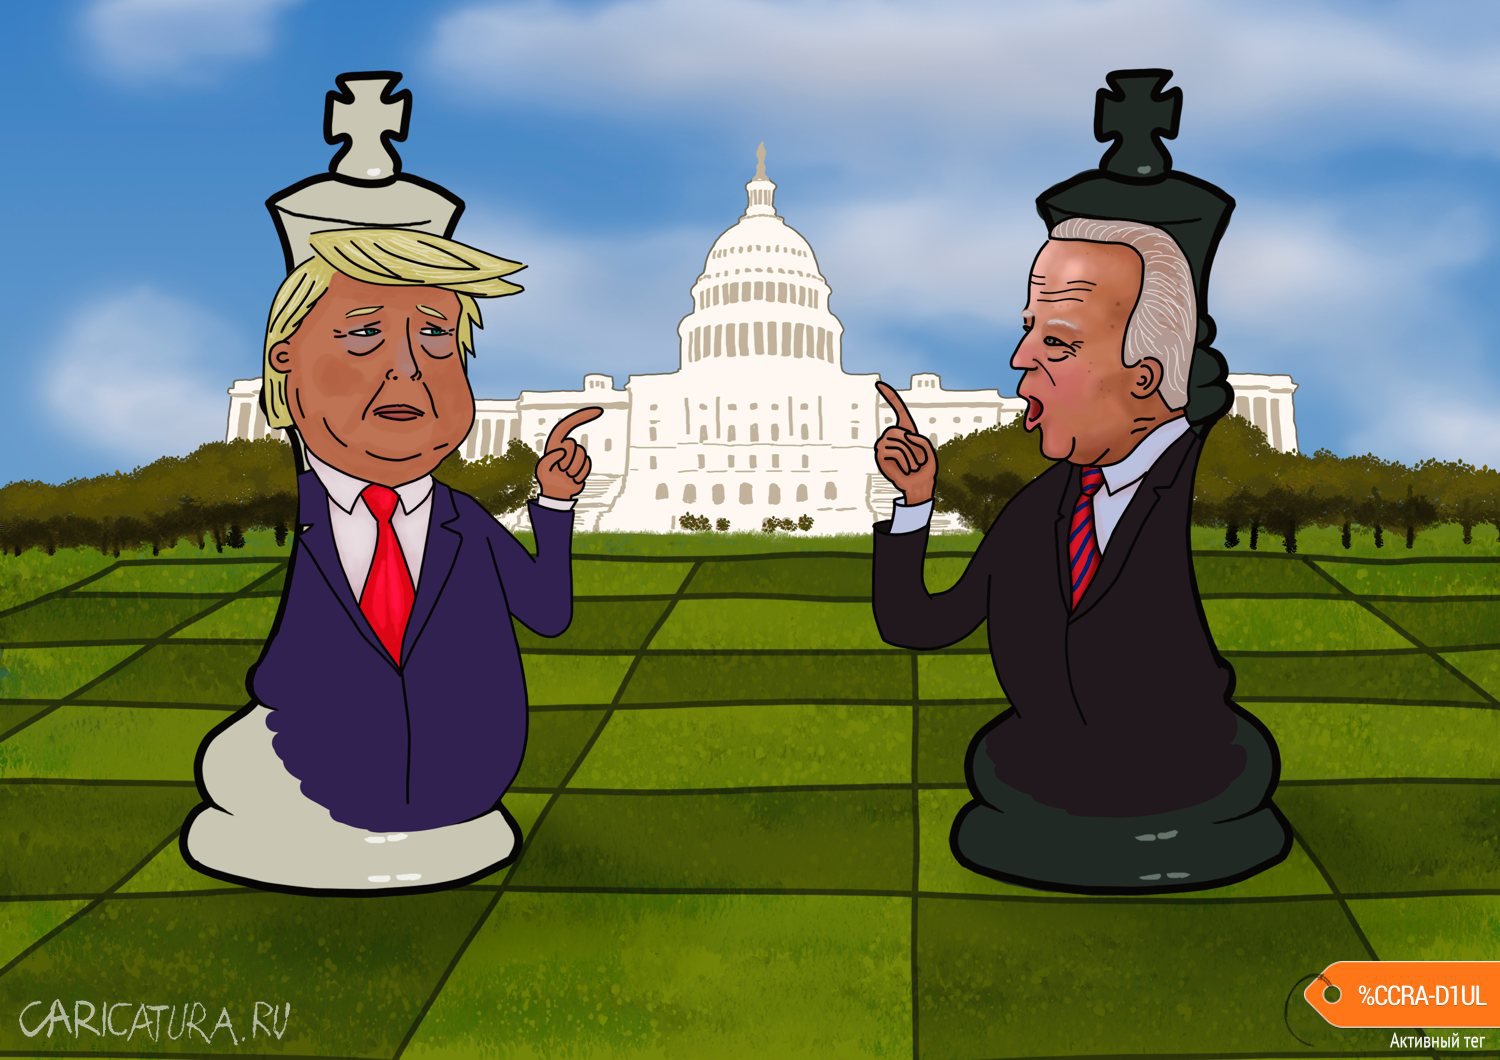 Карикатура "Игра в выборы. Шахматы в политике", Георгий Урушадзе